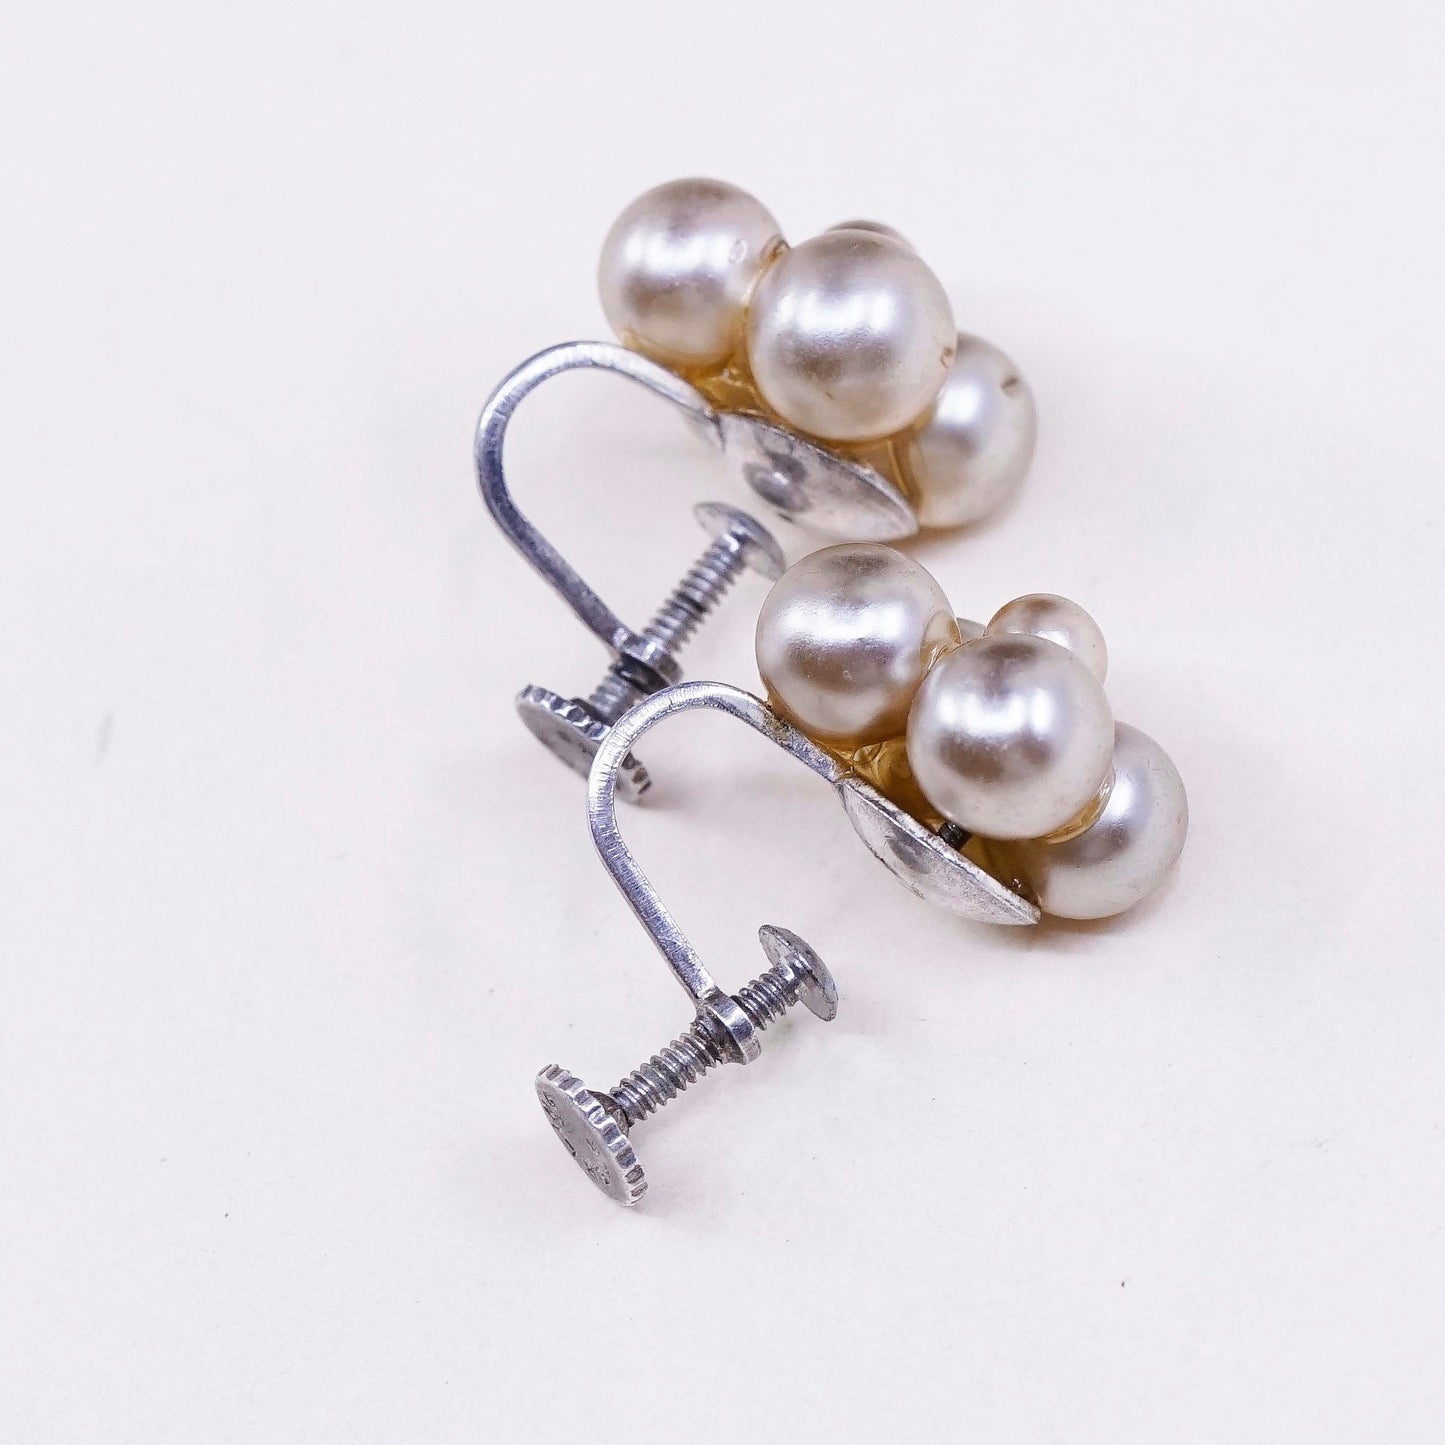 Vintage sterling silver handmade earrings, 925 screw back with pearl